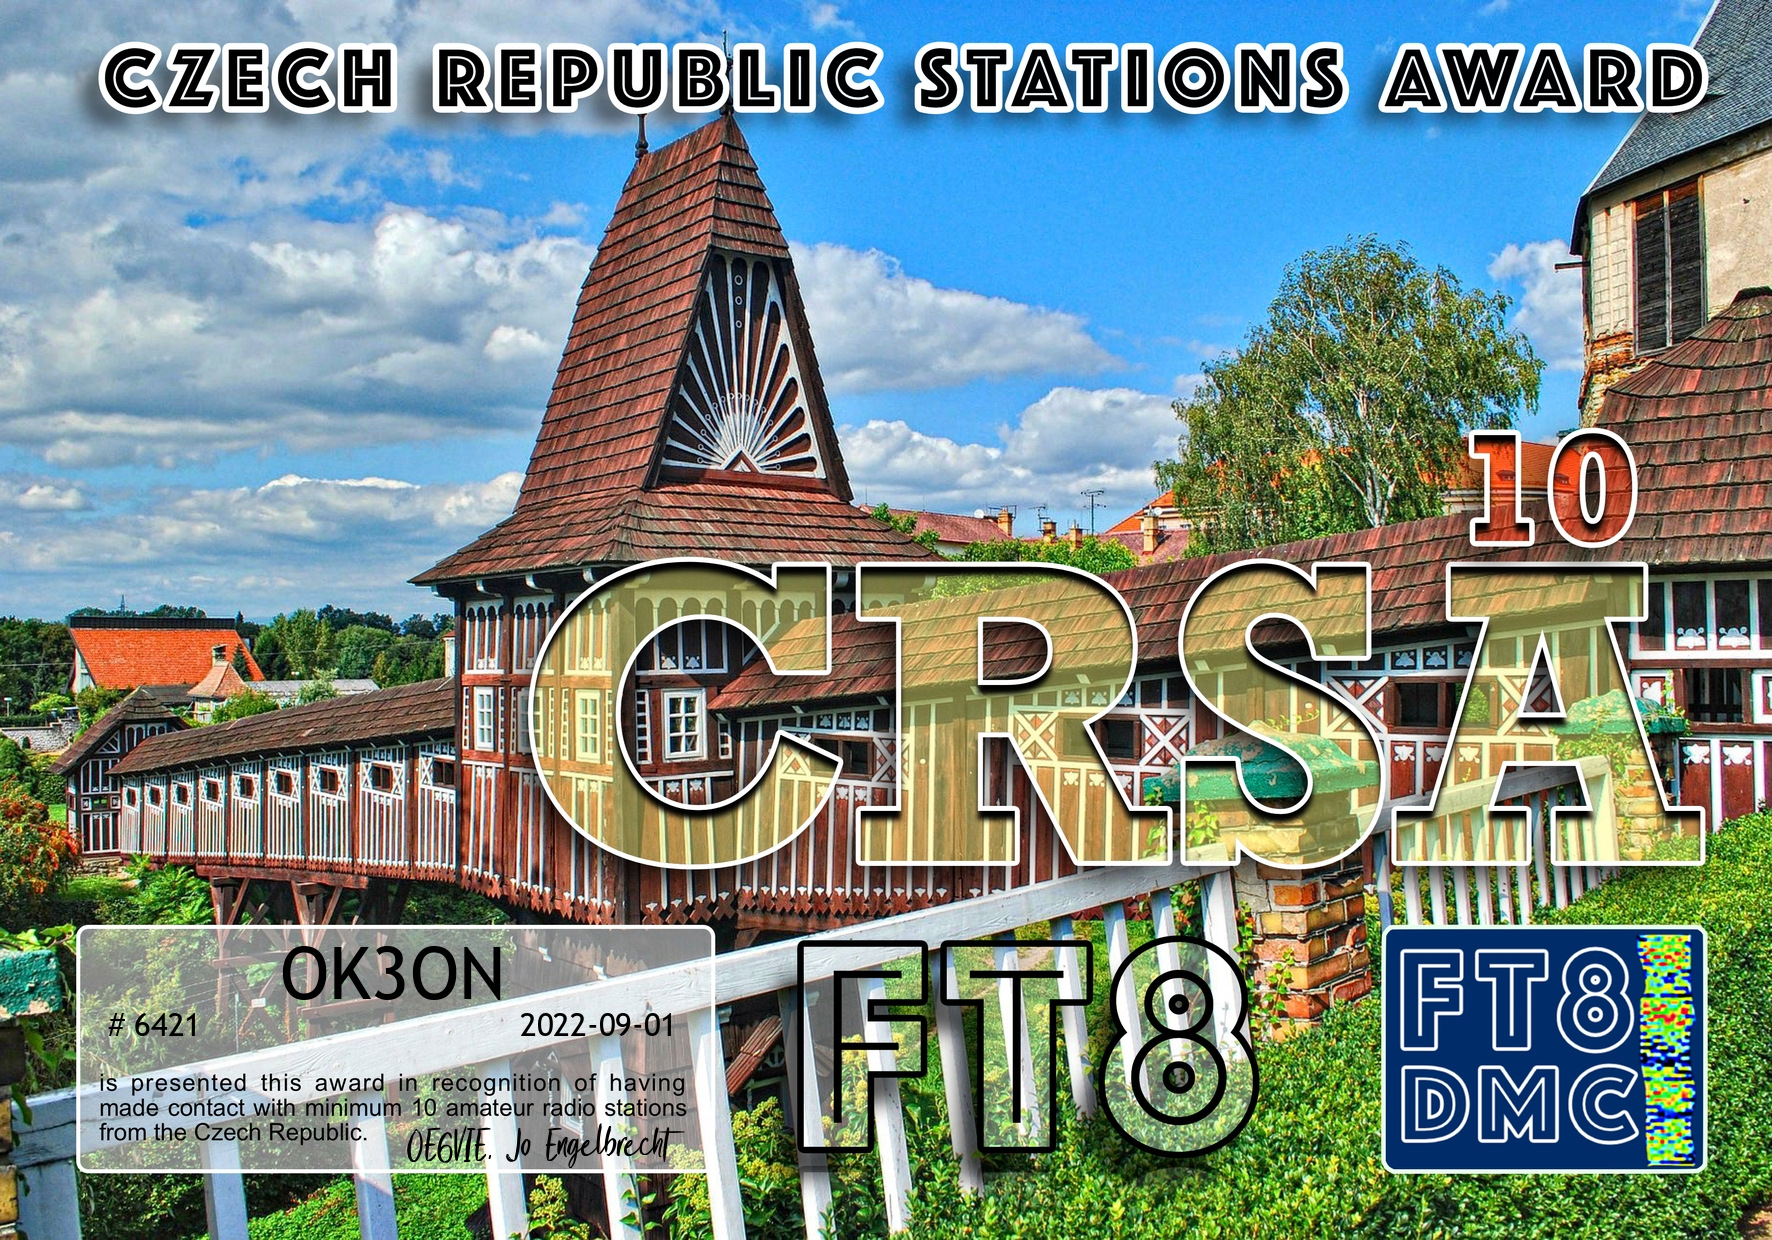 awards/OK3ON-CRSA-III_FT8DMC.jpg